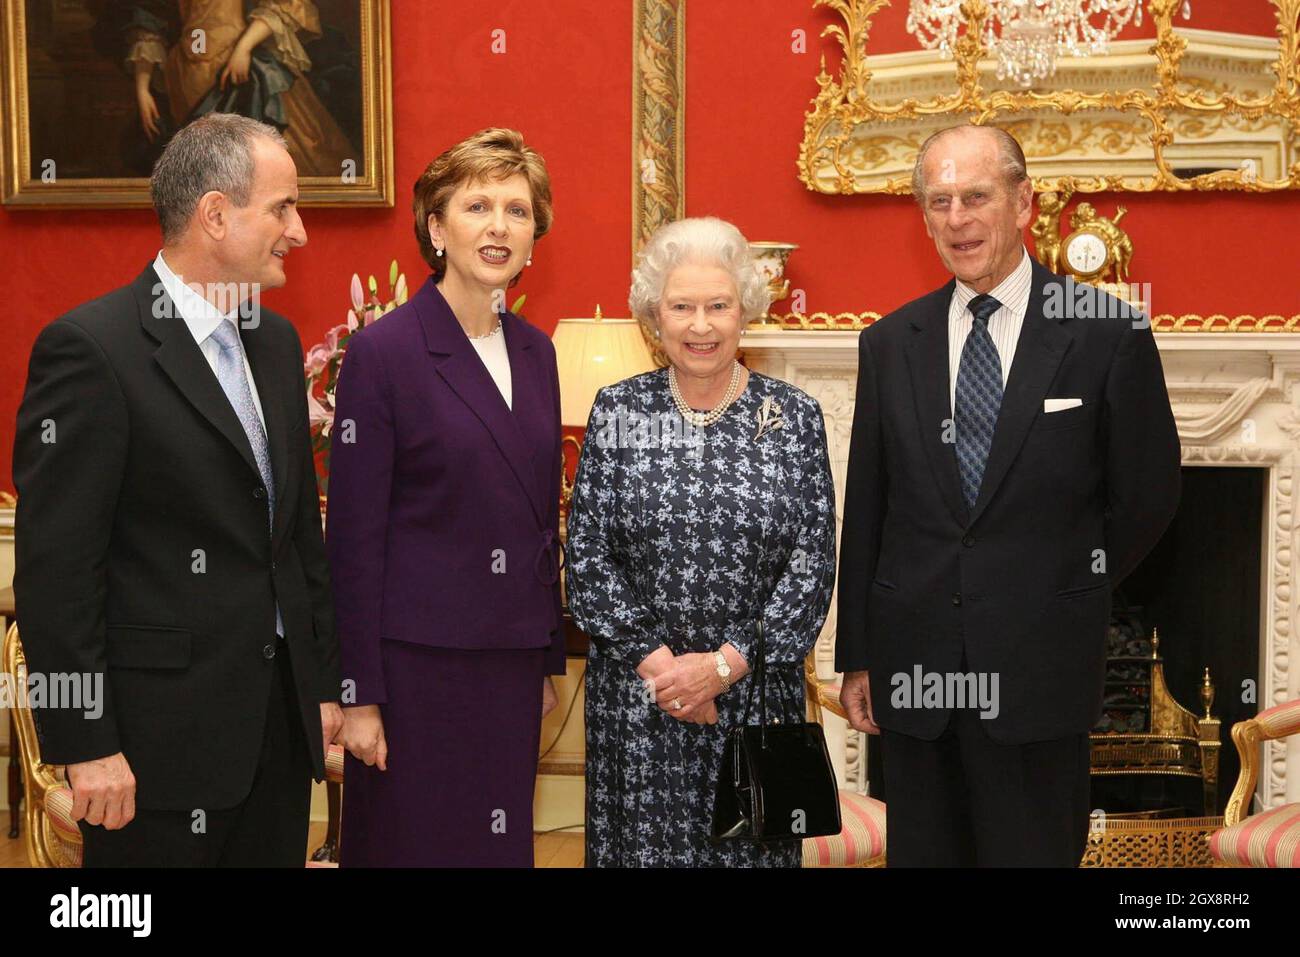 La reina Isabel II y el príncipe Felipe, duque de Edimburgo se reúnen con la presidenta irlandesa Mary McAleese y su marido el Dr. Martin McAleese en el Castillo de Hillsborough, Belfast. Es la primera visita de la Reina a Irlanda del Norte desde febrero de 2003. Anwar Hussein/allactiondigital.com Foto de stock